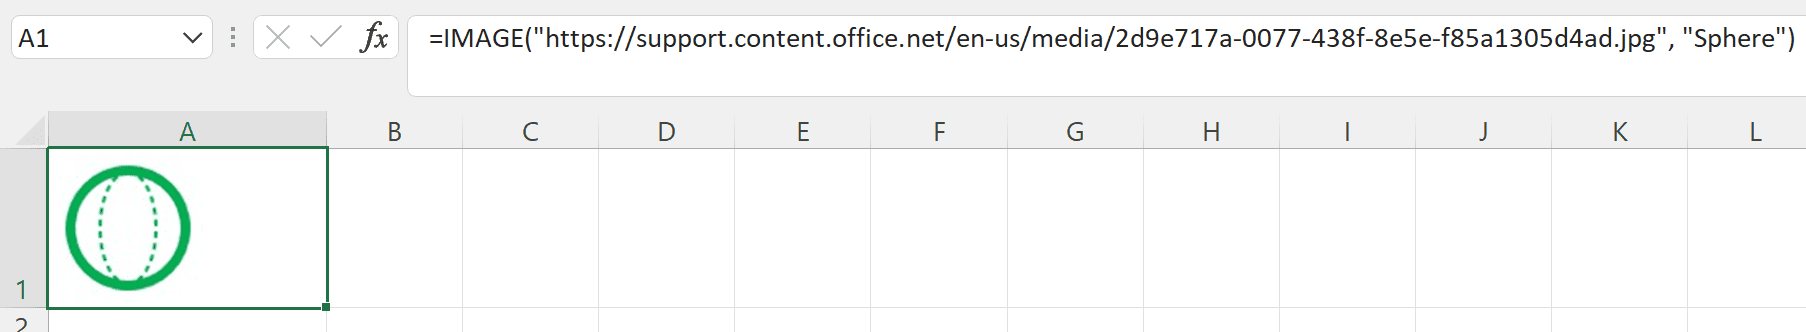 Microsoft Excel ikozvino inoita kuti uise mifananidzo mumaseru